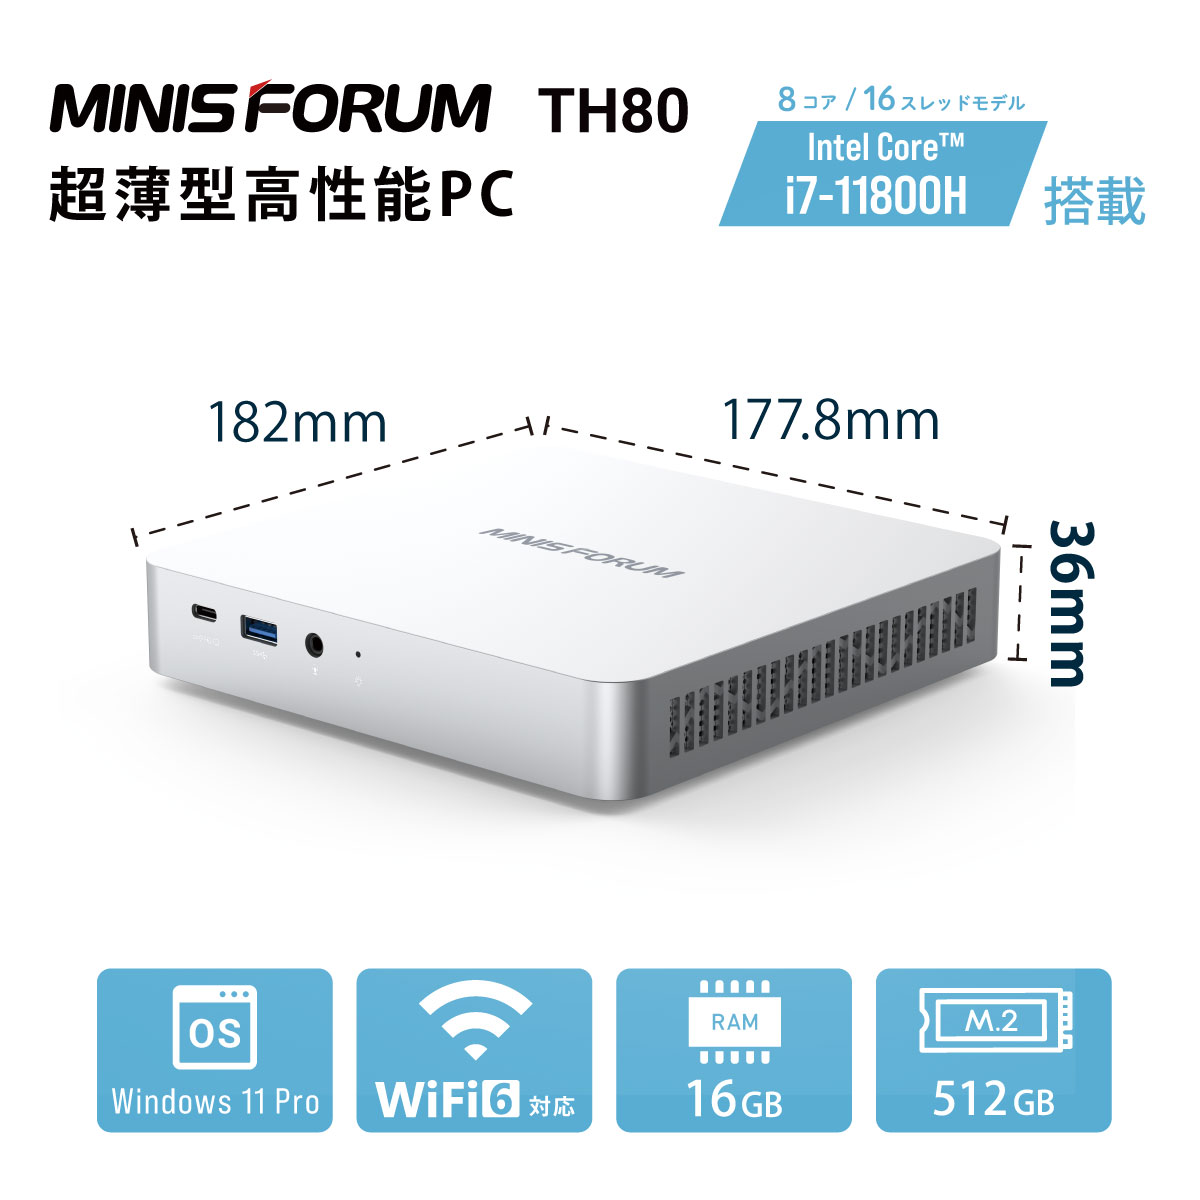 MINISFORUM ミニPC TH80 メモリ16GB ストレージ512GB Core I7-11800H搭載 36mm厚のスリムデスクトップパソコン  TH80-16 512-W11Pro(11800H) Windowsデスクトップ